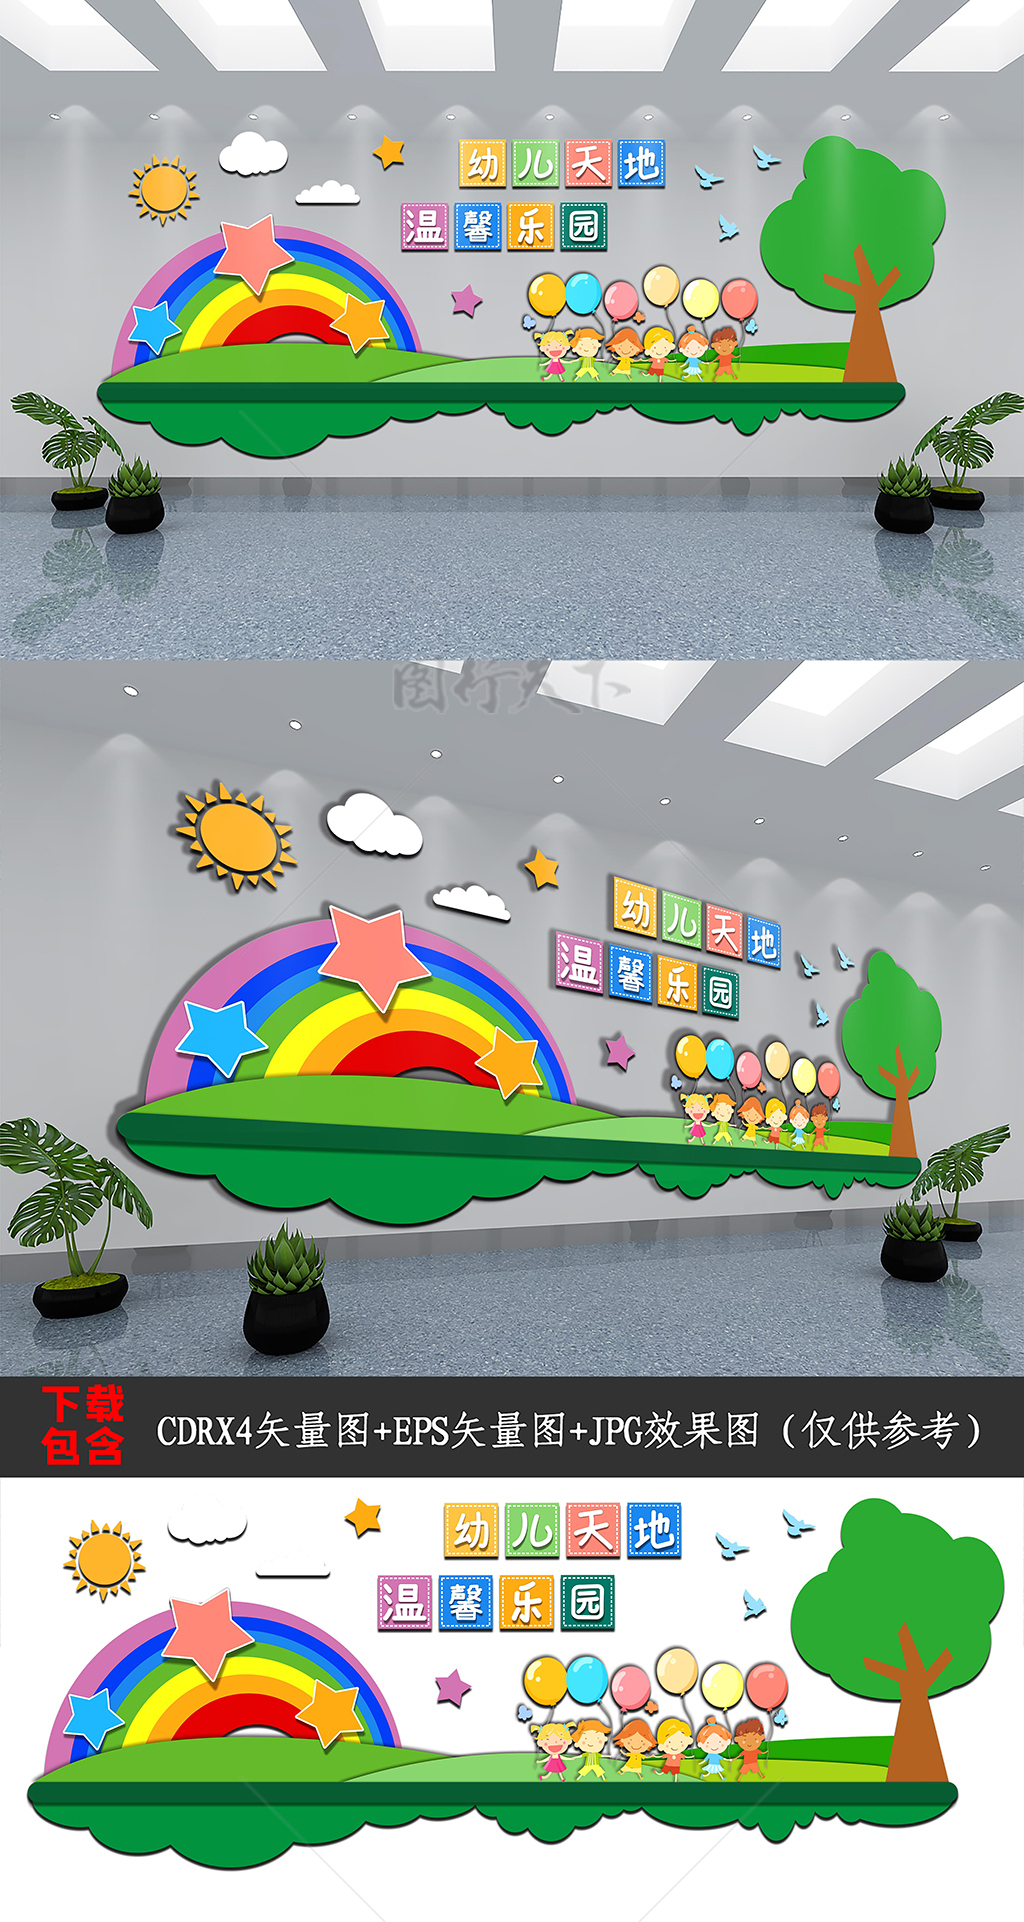 清新可爱卡通人物学校幼儿园文化形象背景墙